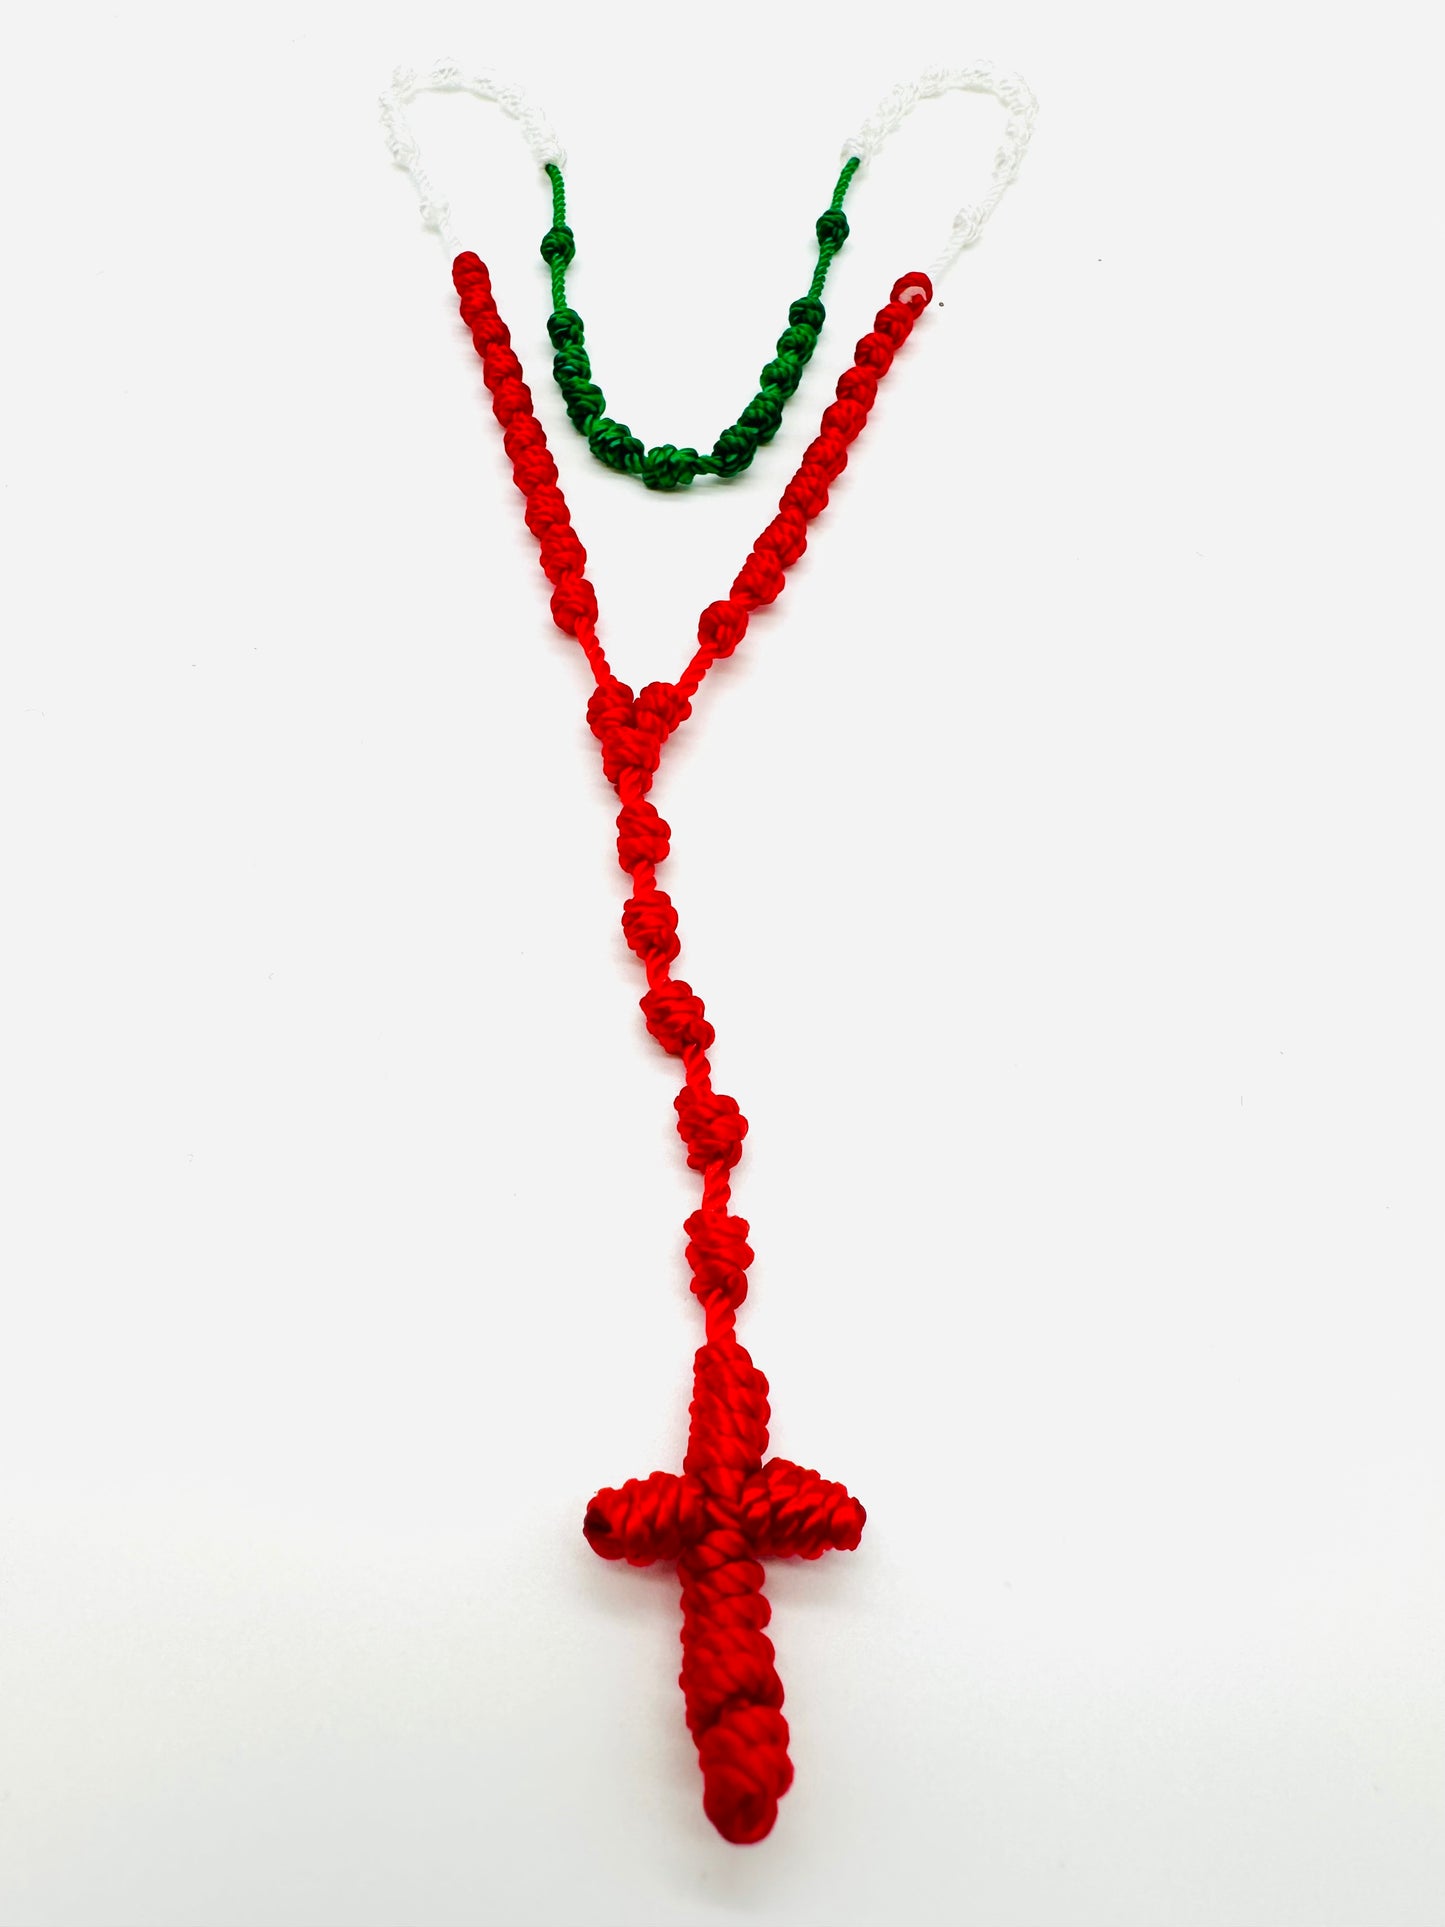 Tricolor woven thread Rosary 18" - Rosario Tricolor tejido de hilo 18"